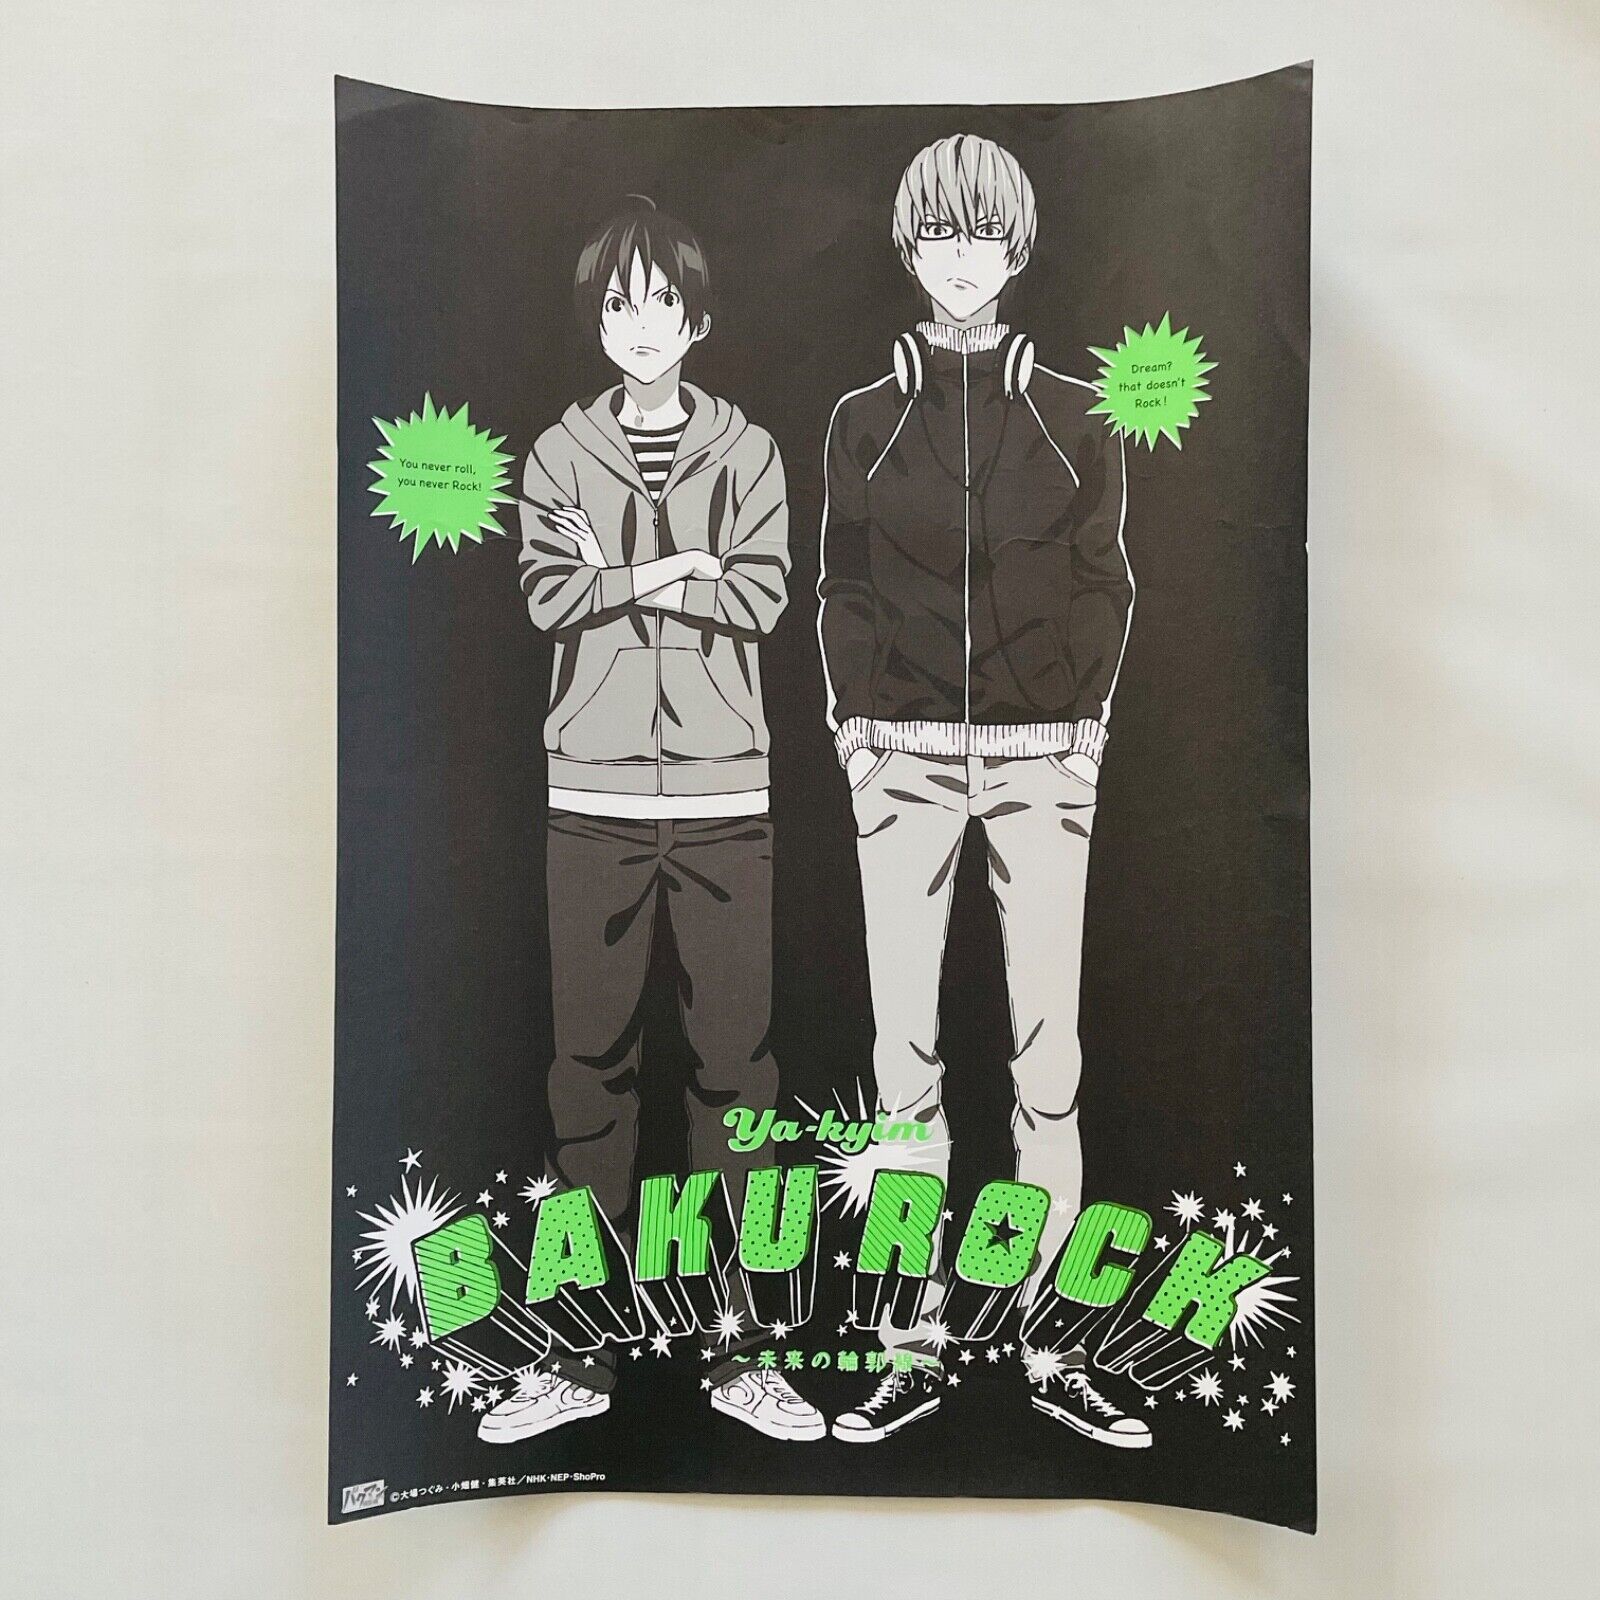 Bakuman BAKUROCK YA-KYIM Moritaka Mashiro & Akito Poster Rare Anime Japan